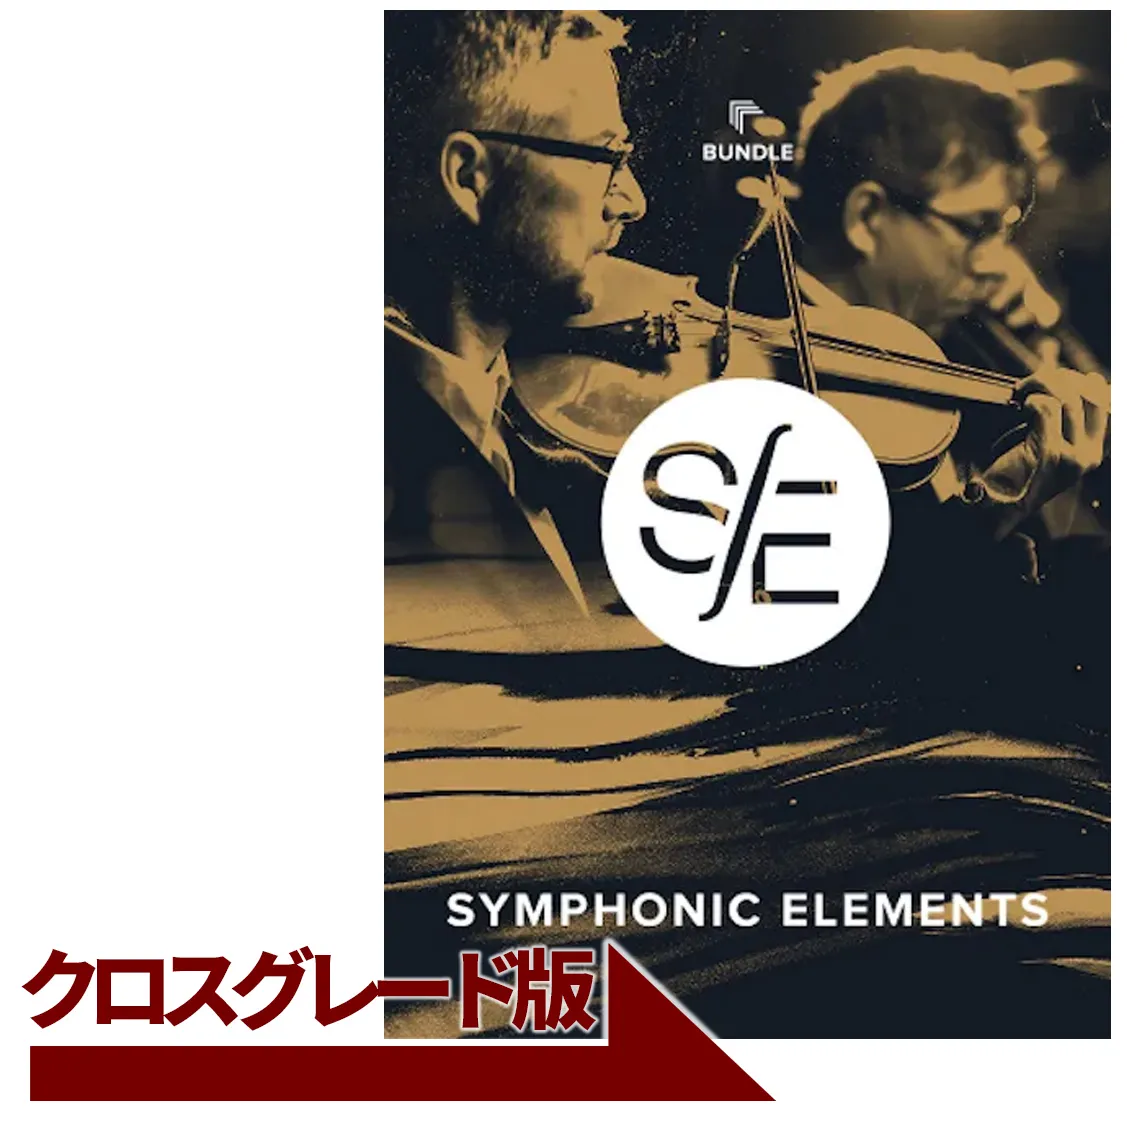 Symphonic Elements Bundle クロスグレード